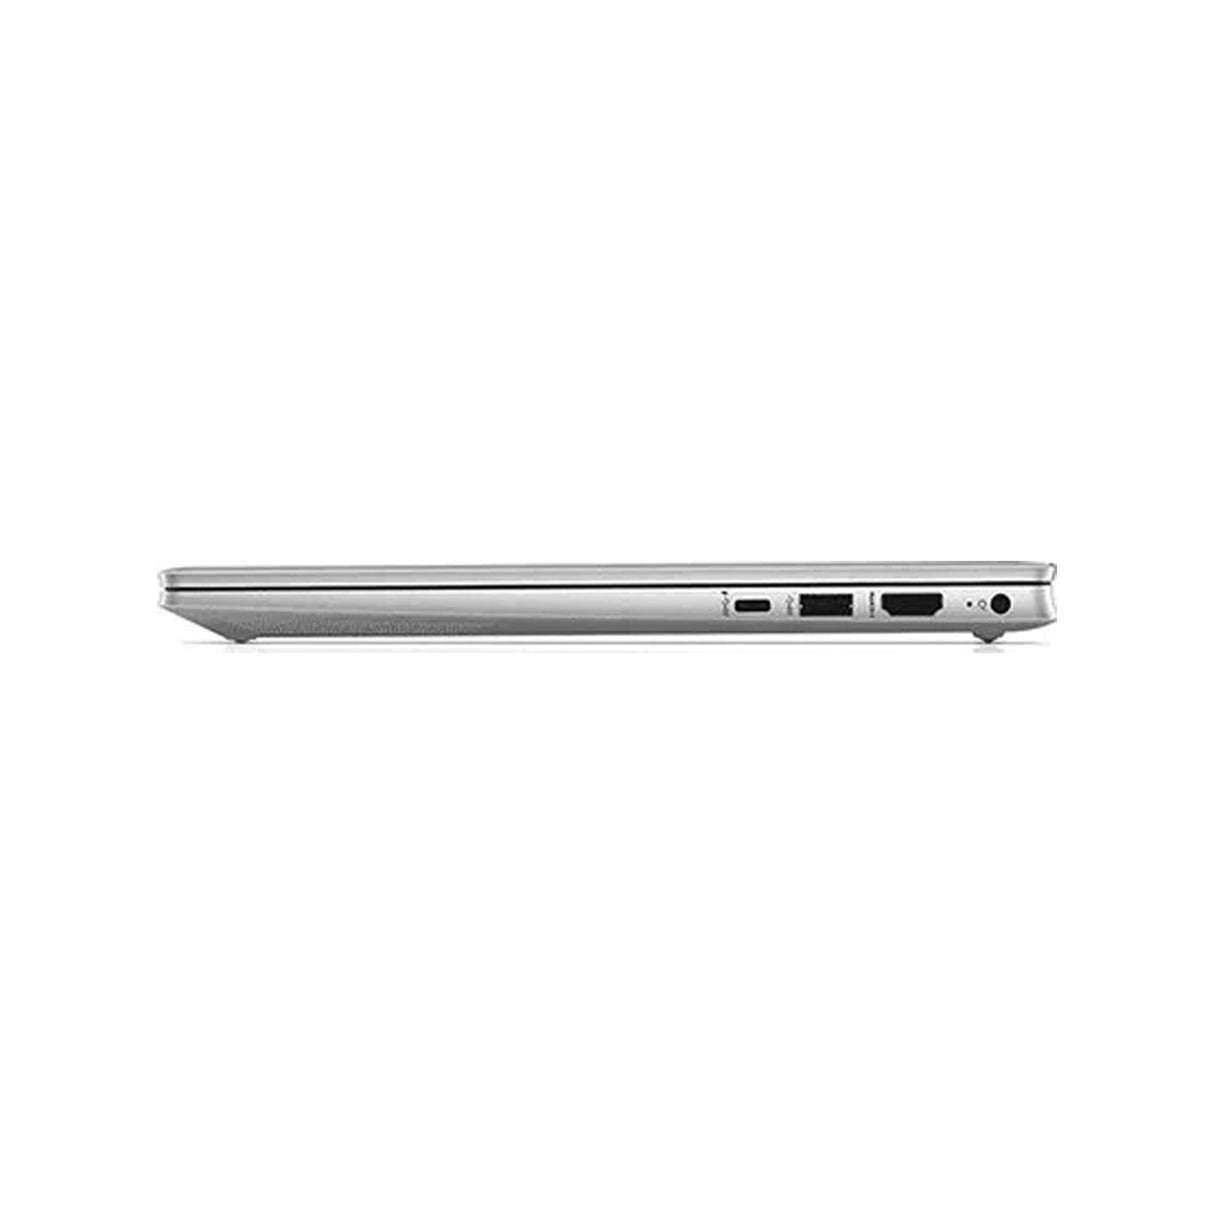 Best Laptop: HP Pavilion 14 - Ryzen 5, 8GB RAM, 512GB SSD, Win 11, 14"